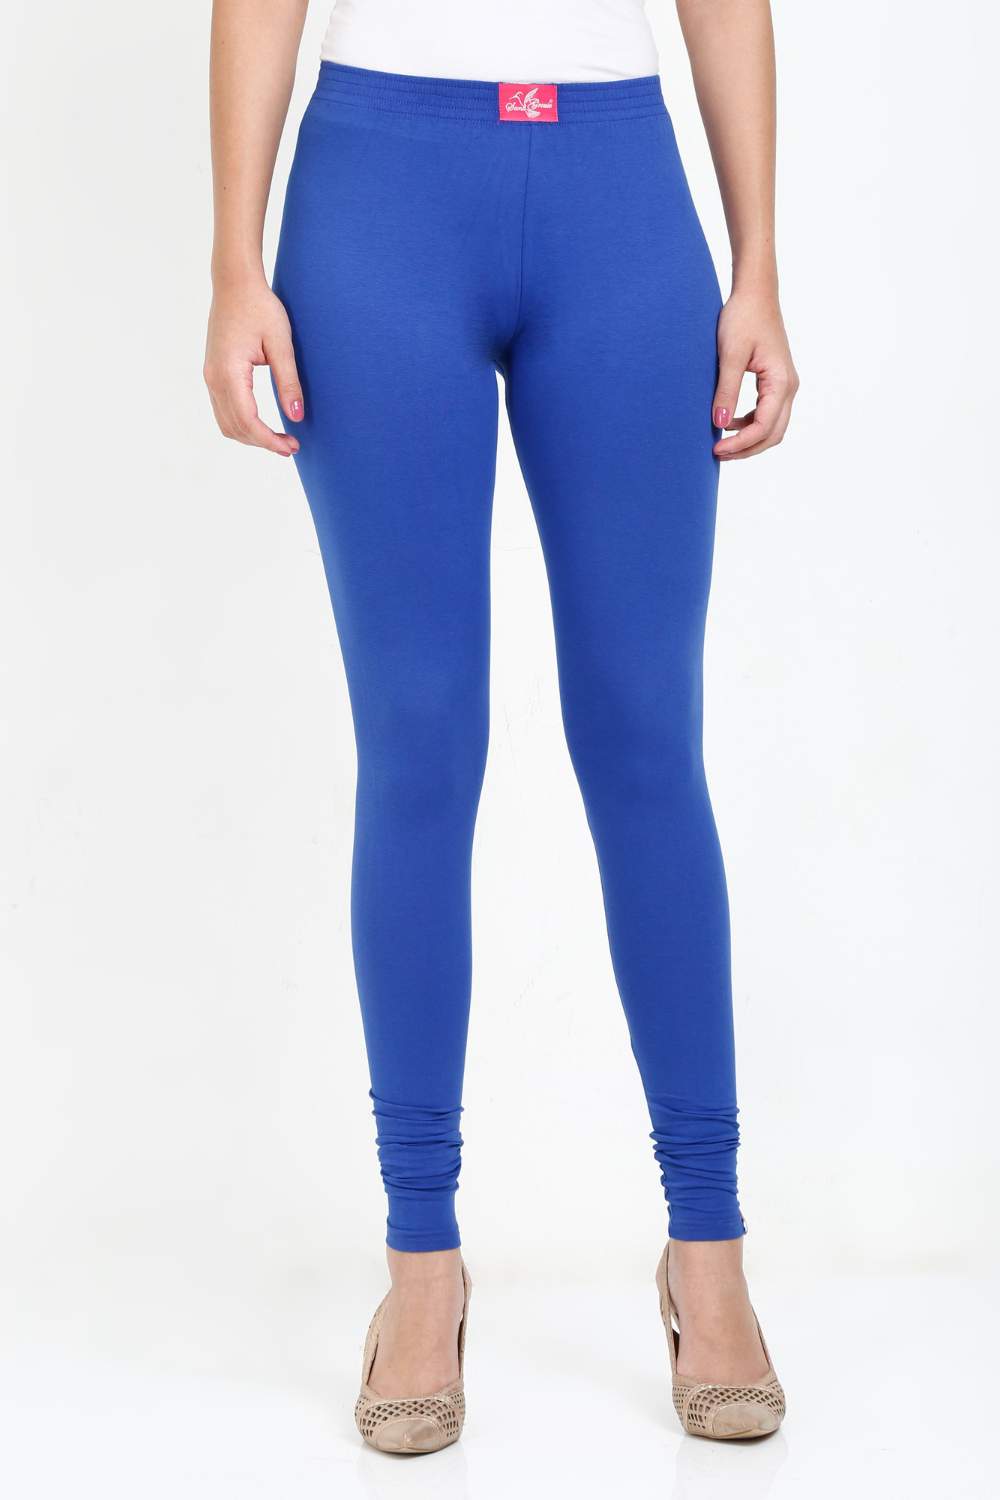 Women's Cotton Lycra Royal Blue Full length legging – Sand Grouse